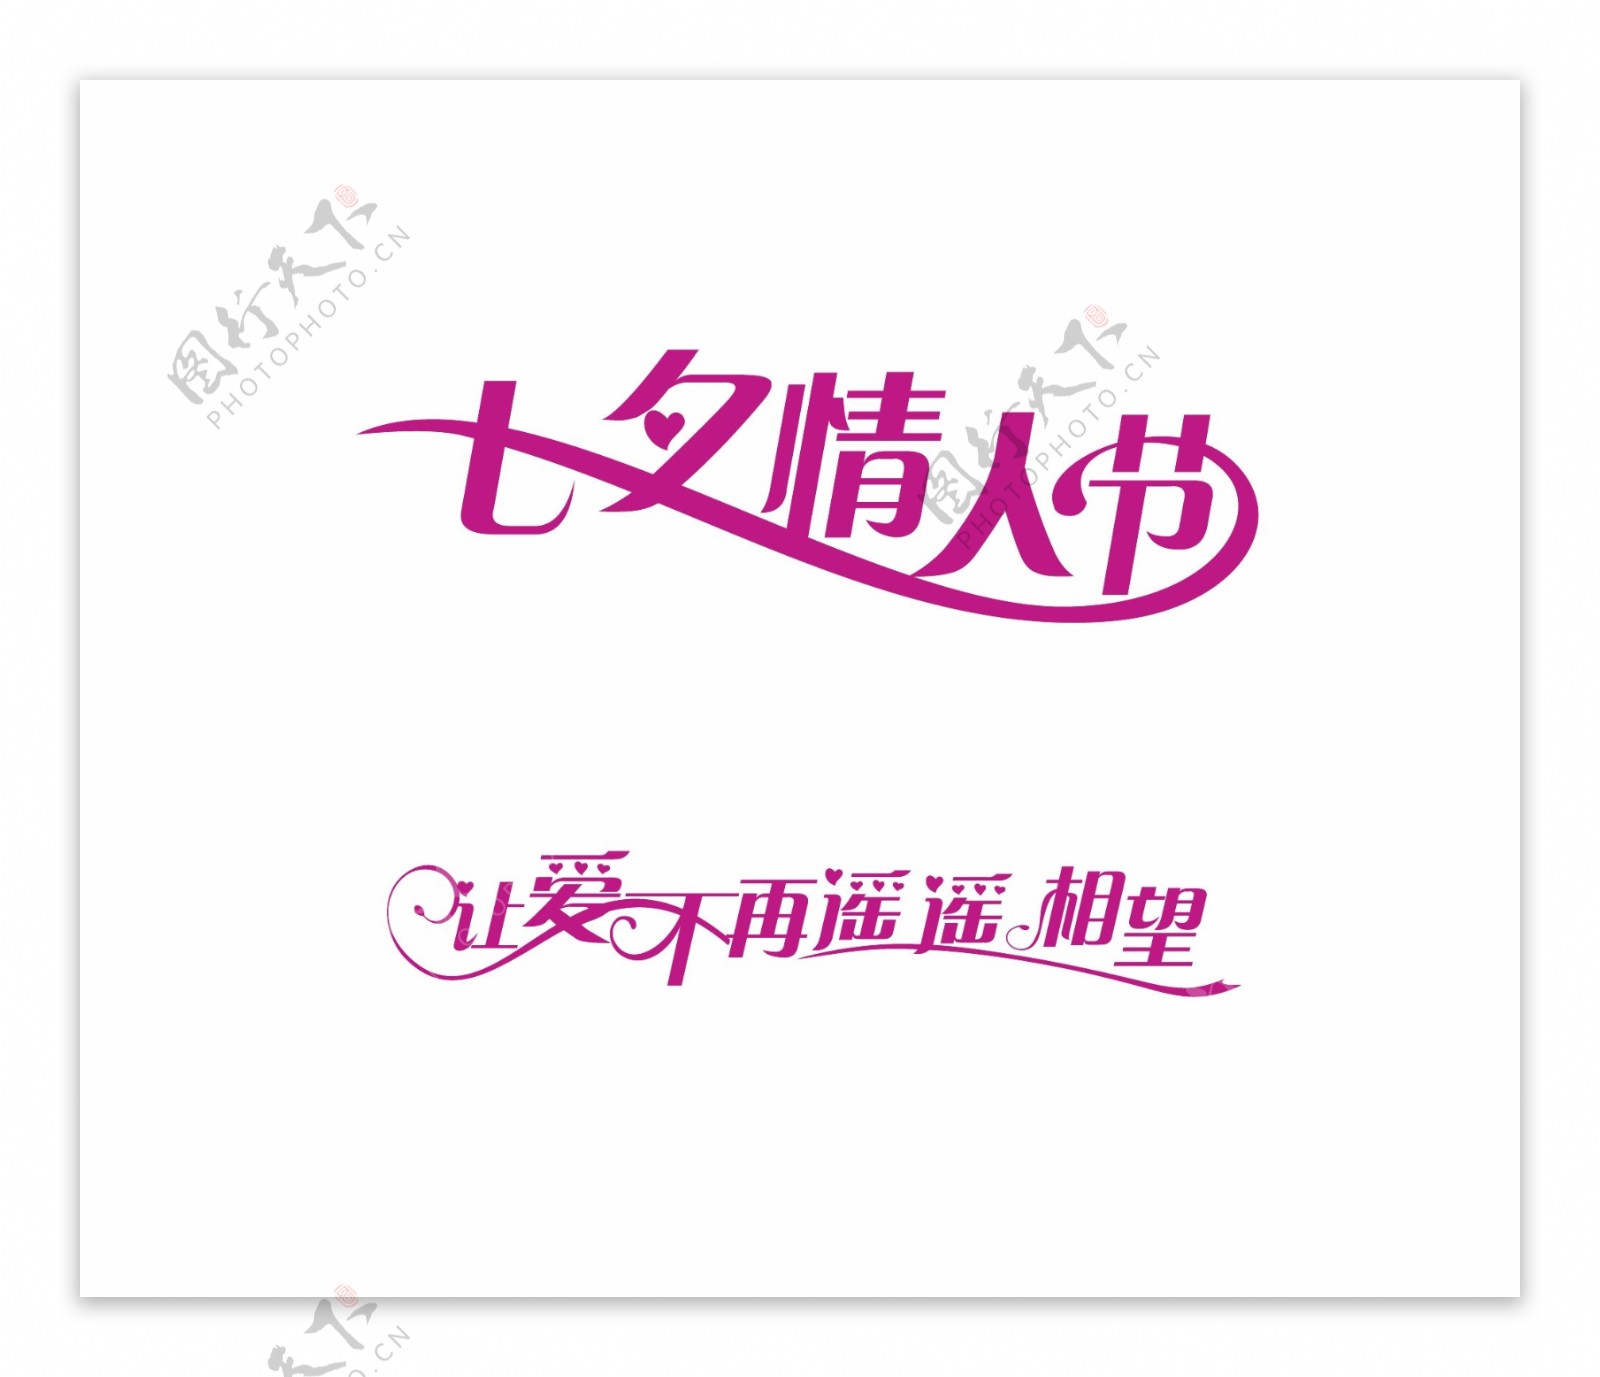 节日素材七夕情人节字体设计图片